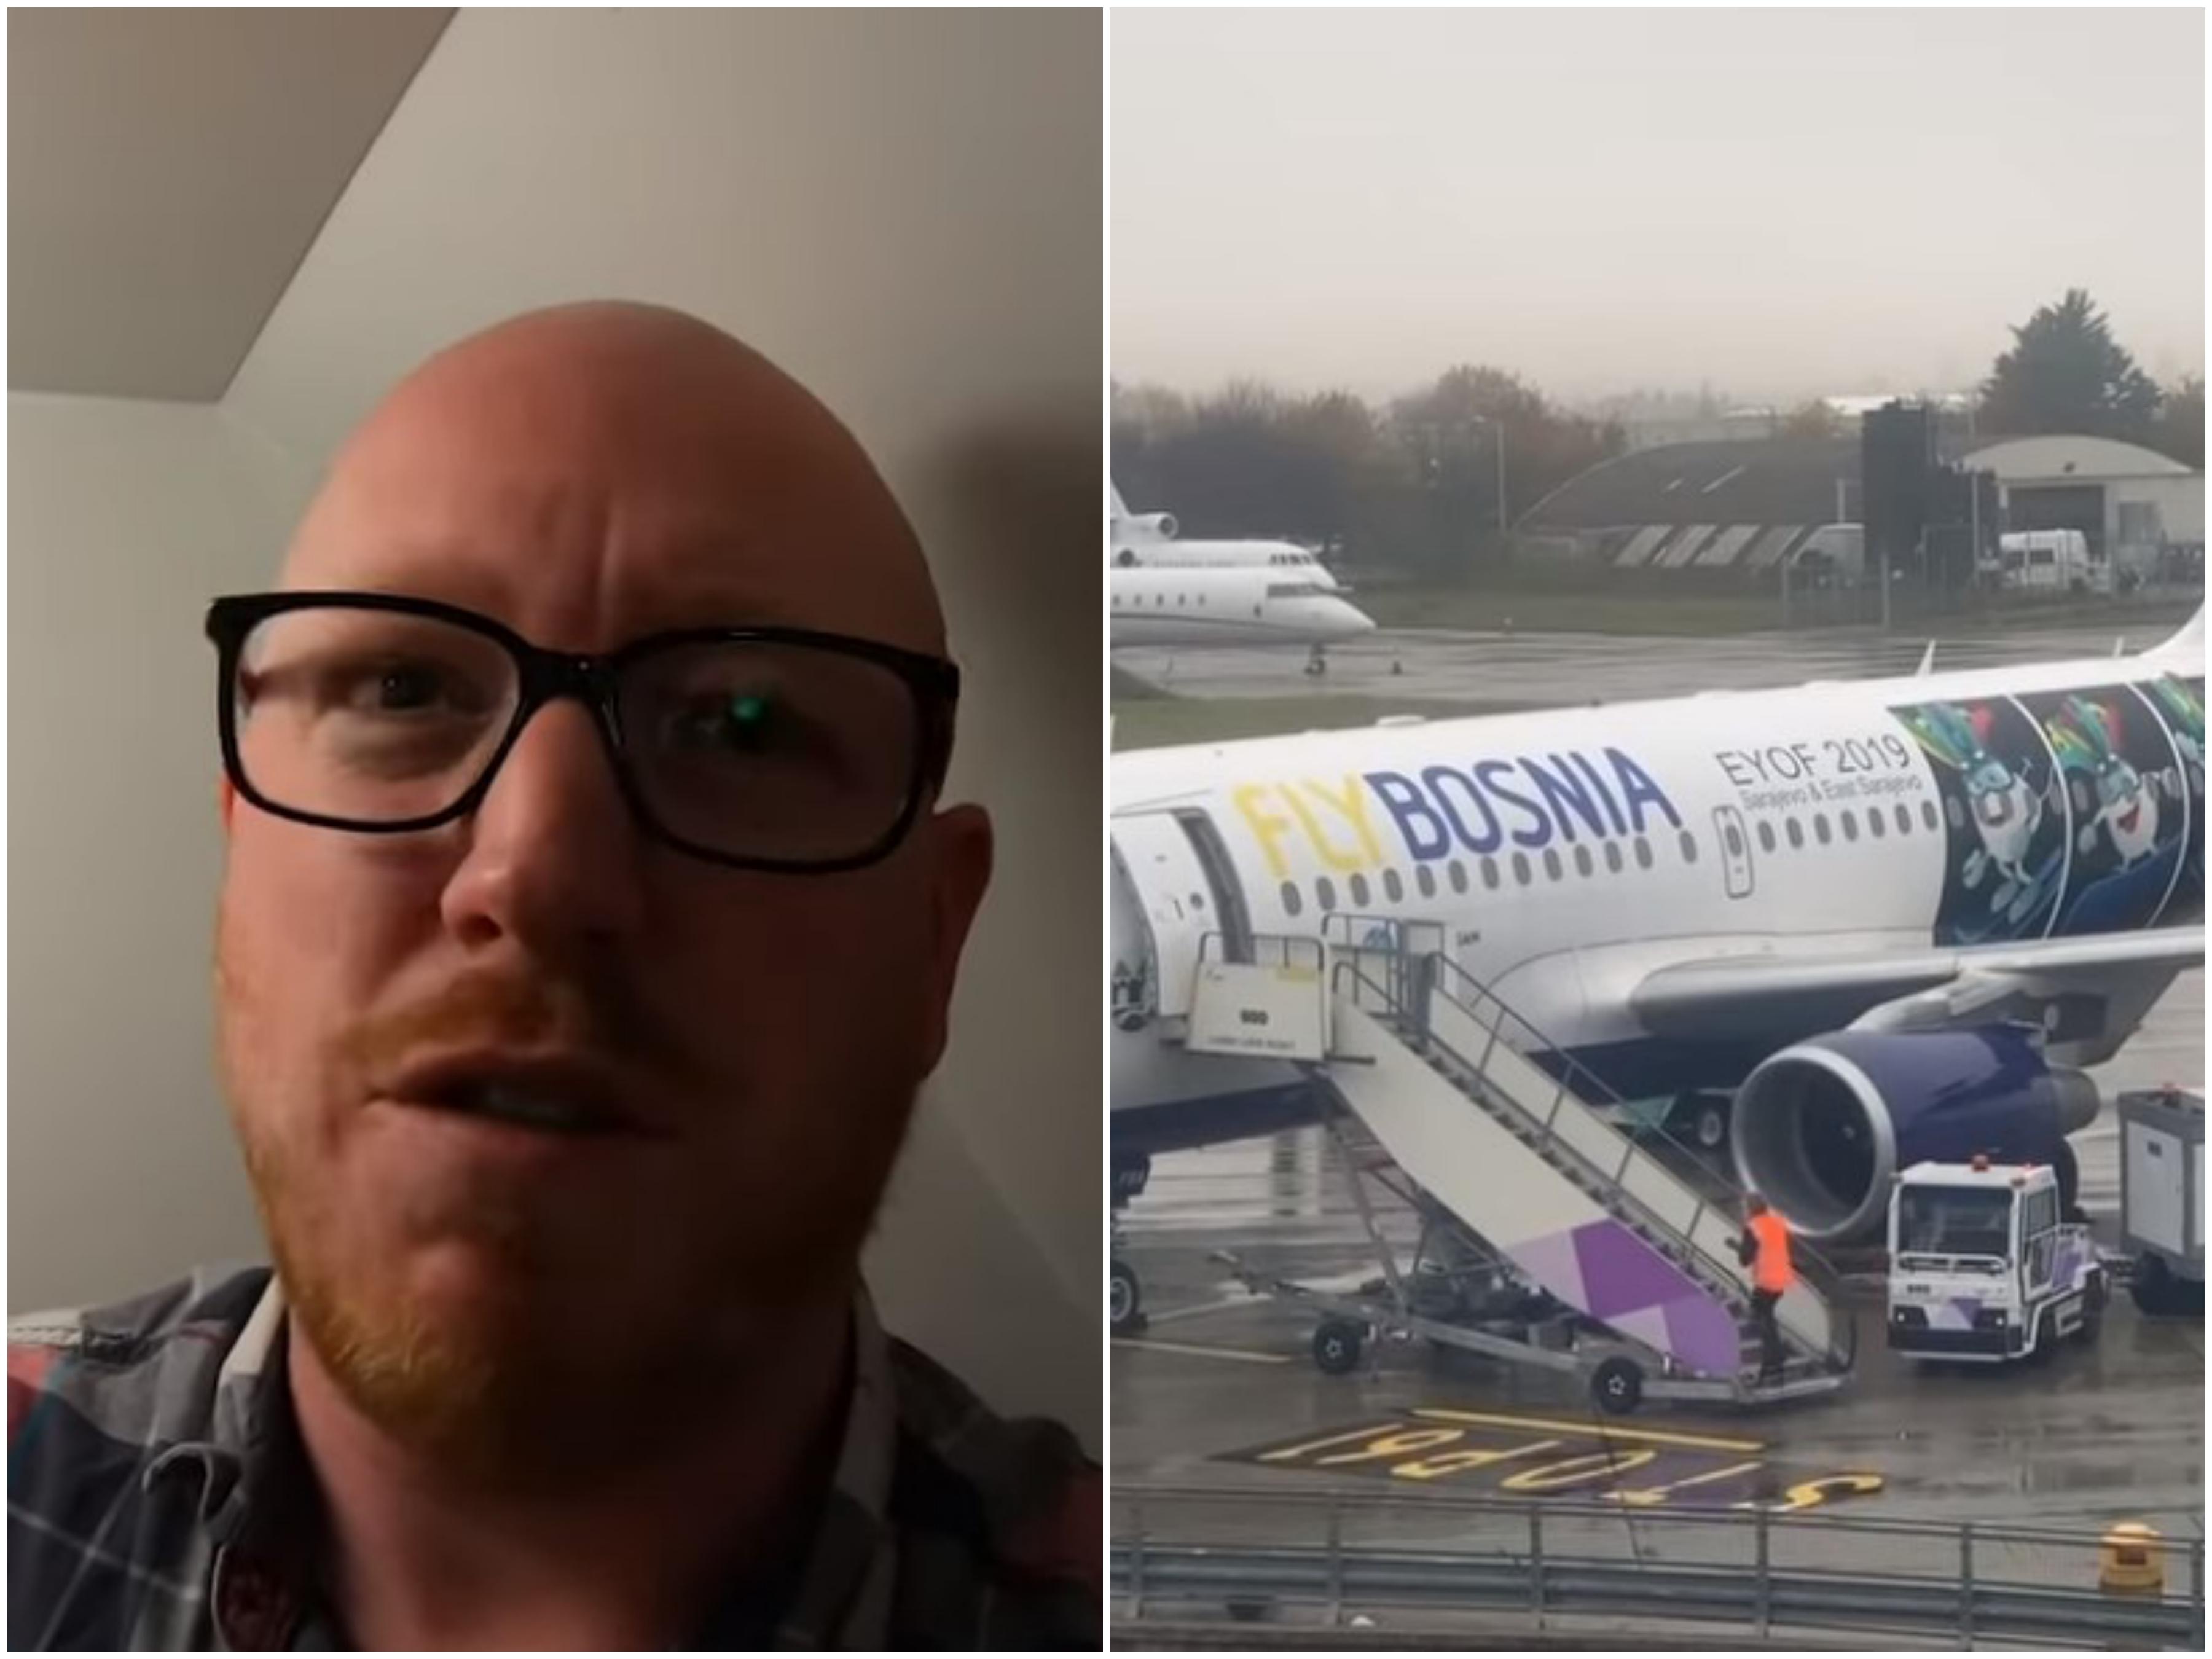 Stručnjak za putovanja: Moj bizarni let za Sarajevo s "FlyBosnijom"